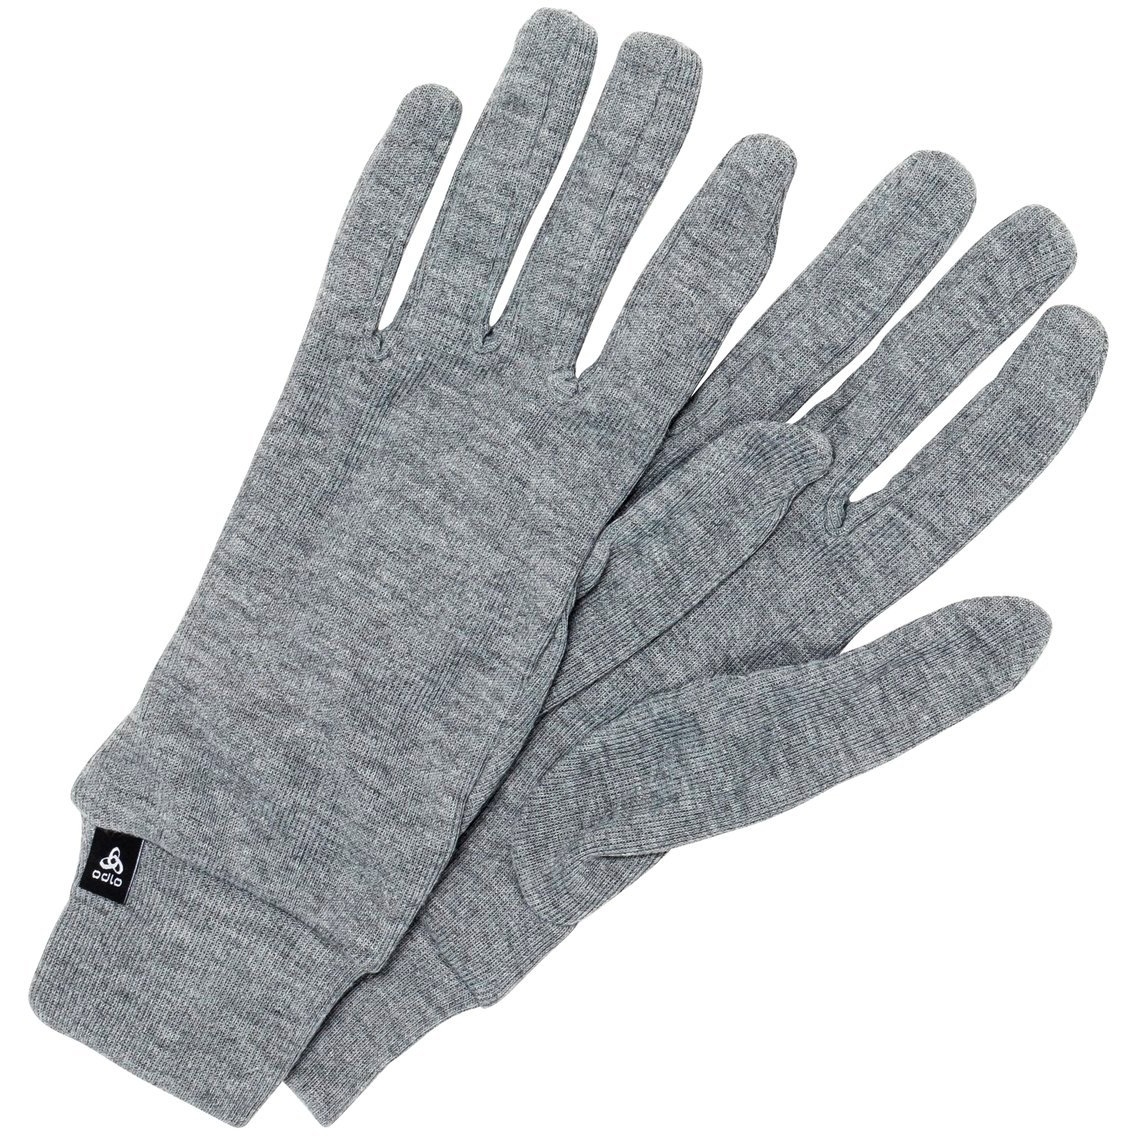 Bild von Odlo Active Warm Handschuhe - odlo steel grey melange